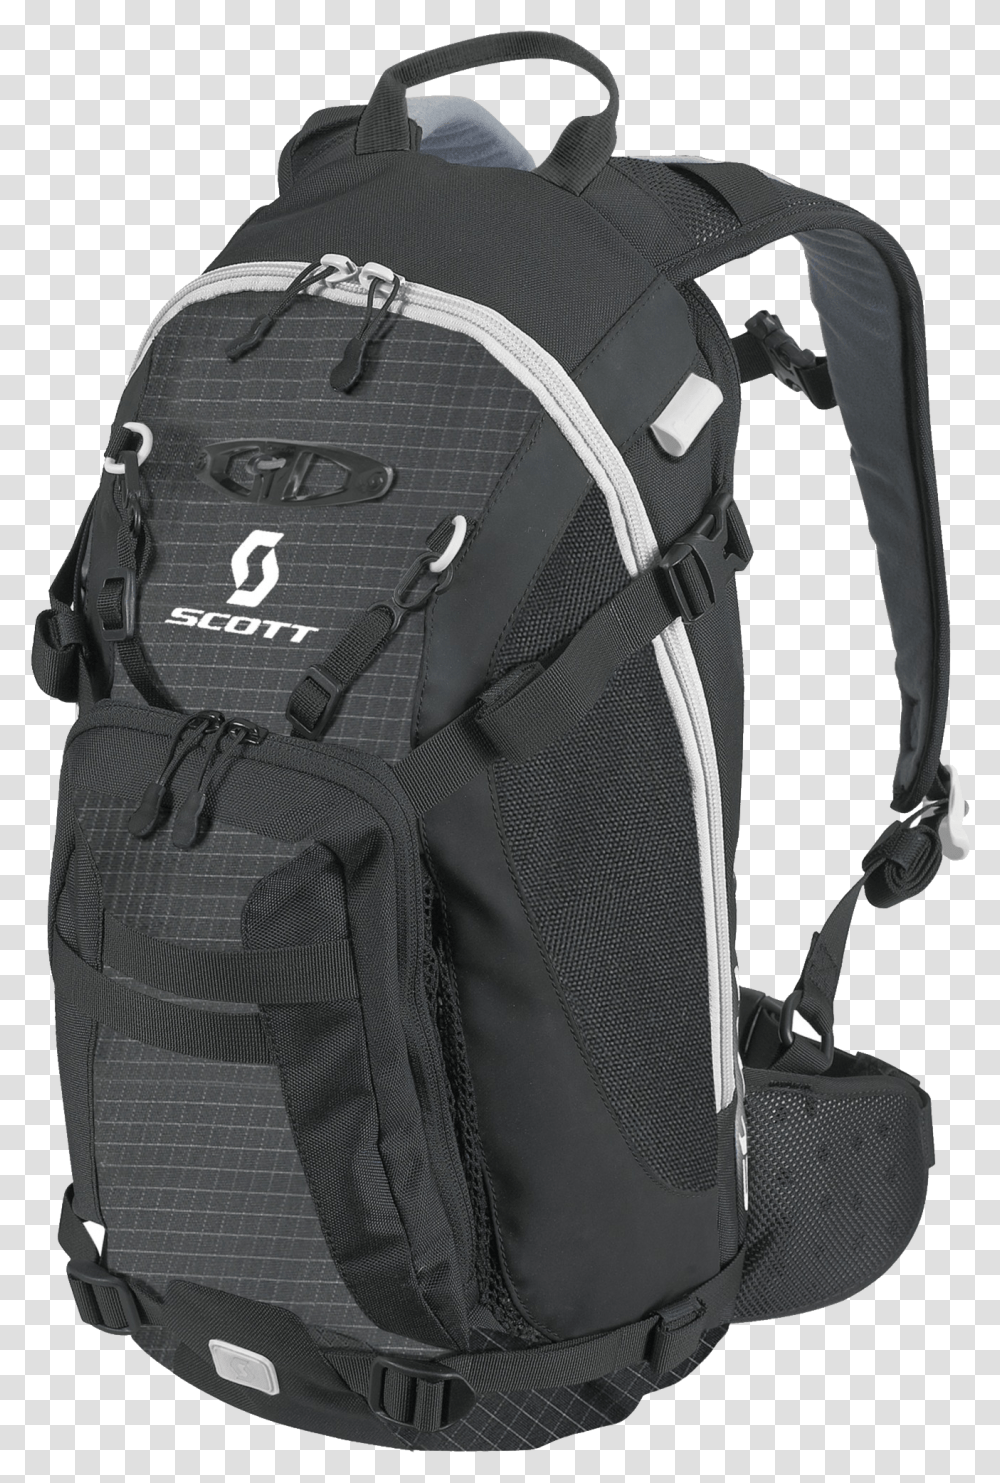 Scott Black Backpack Hiking Backpack Background, Bag Transparent Png